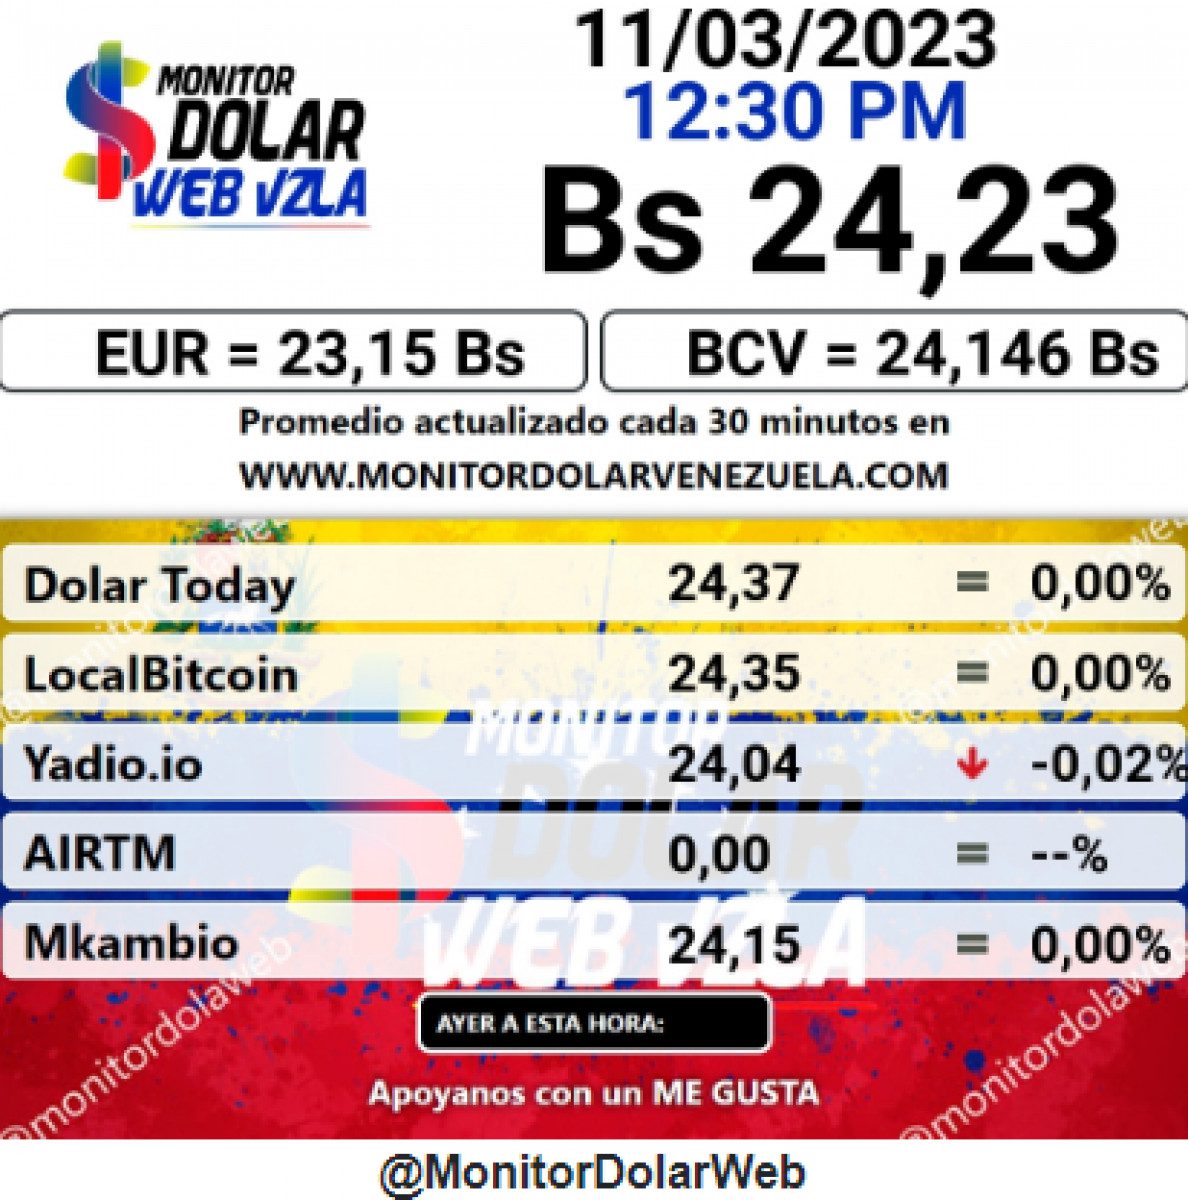 dolartoday en venezuela precio del dolar este jueves 11 de mayo de 2023 laverdaddemonagas.com monitor2